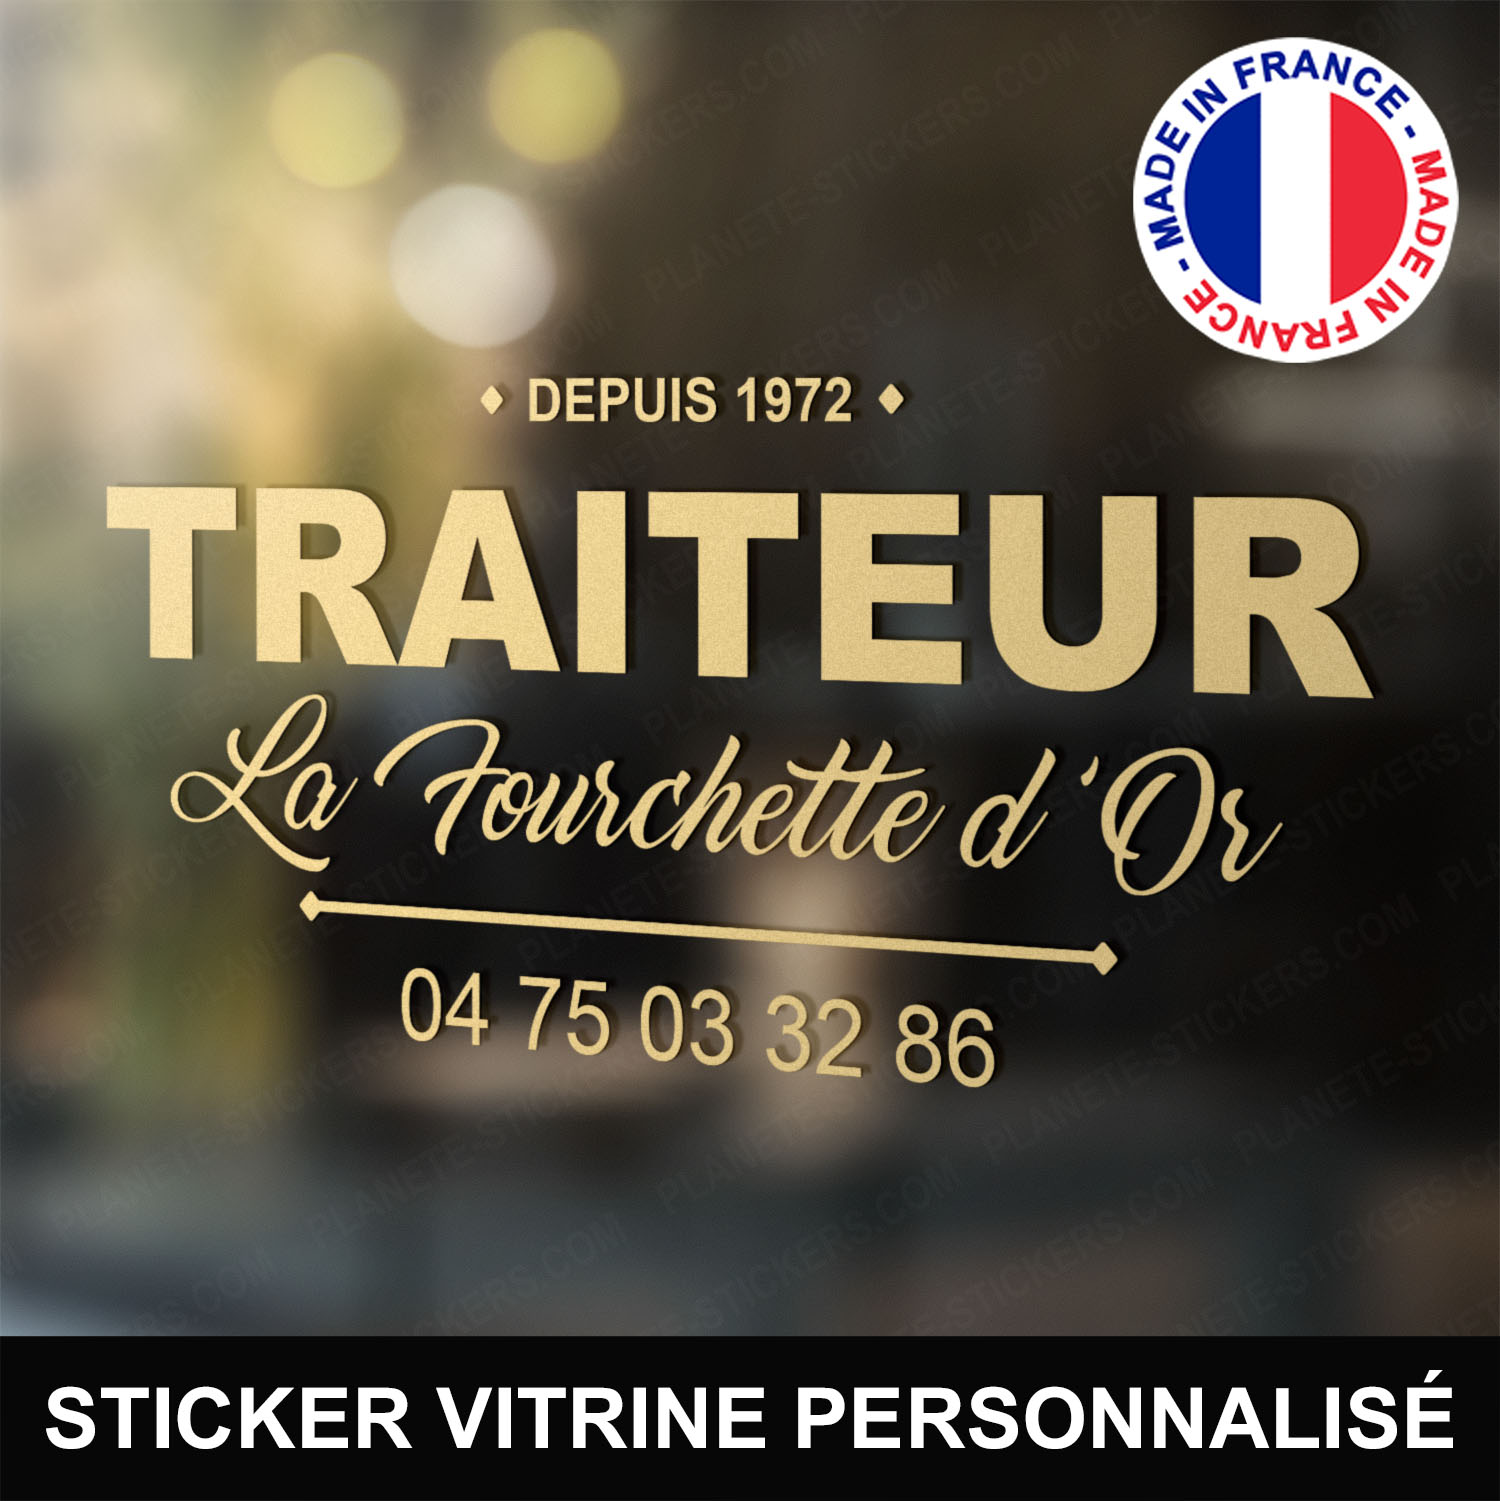 ref2traiteurvitrine-stickers-traiteur-vitrine-sticker-personnalisé-autocollant-pro-restaurateur-restaurant-vitre-professionnel-logo-écriture